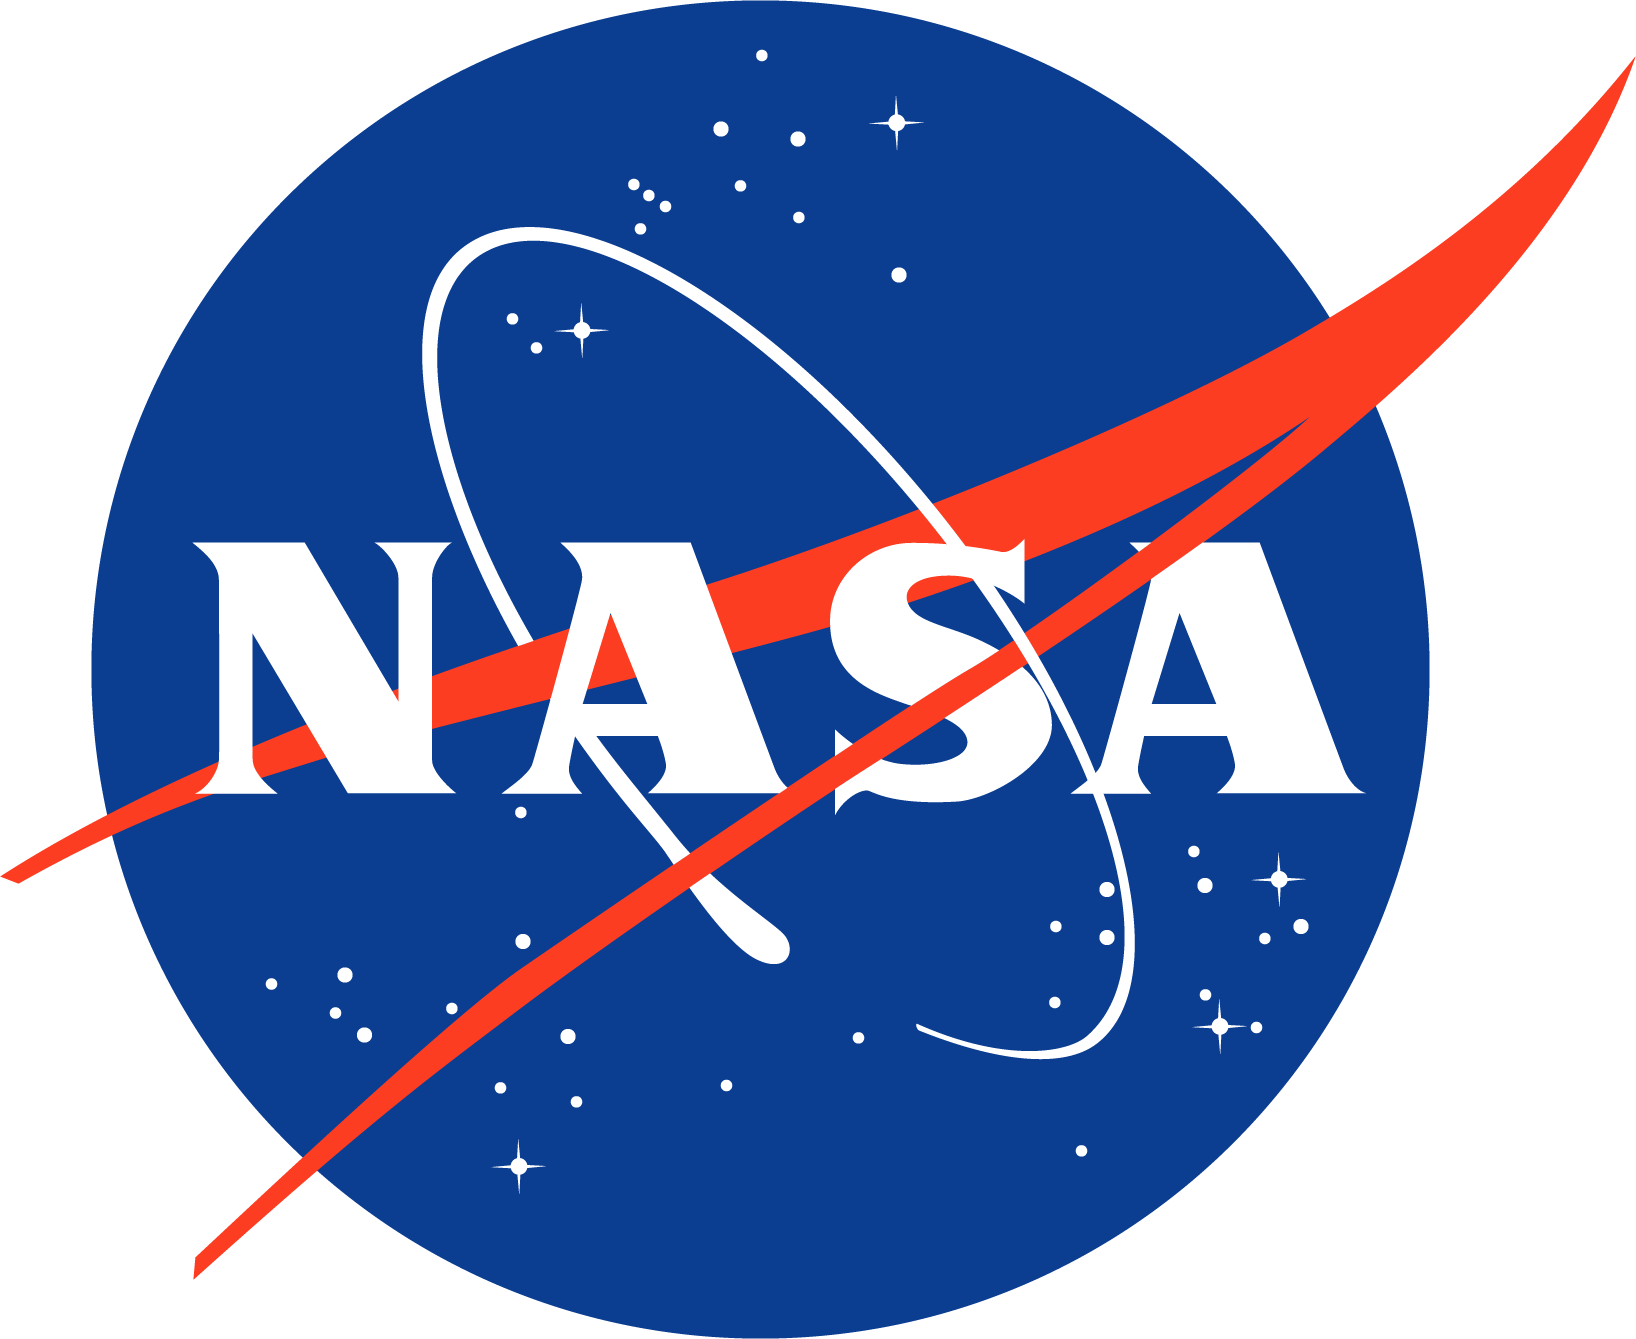 Text says NASA over a blue circular blackground